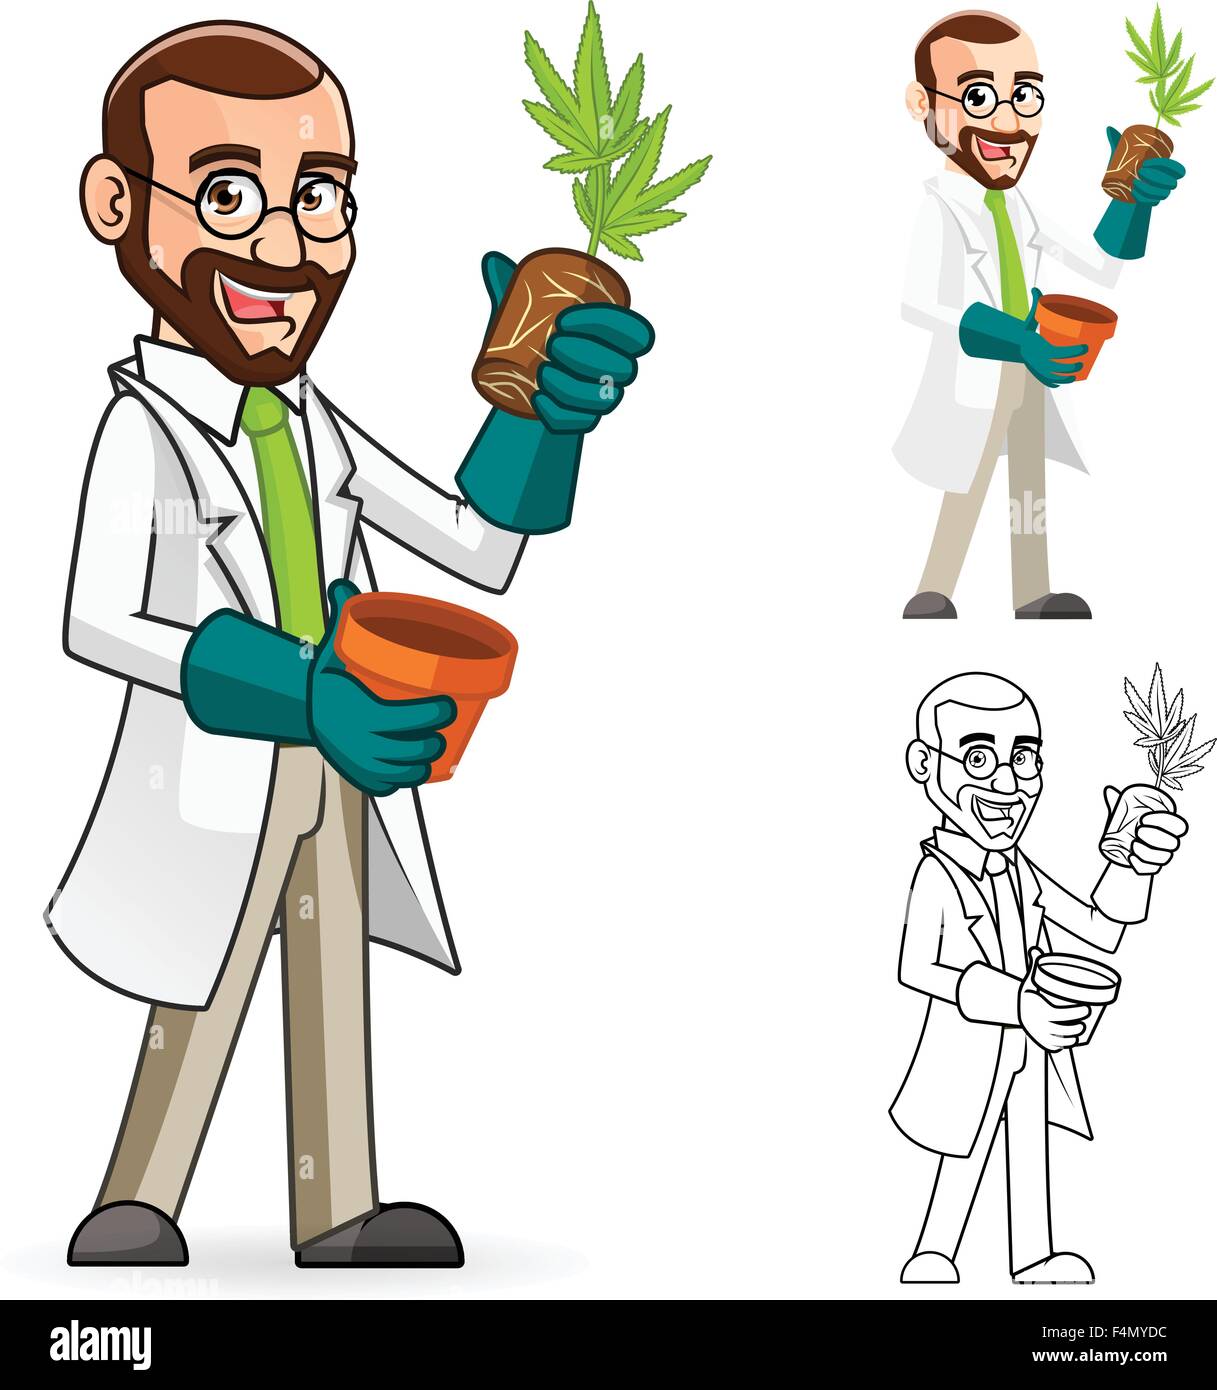 Pflanze Wissenschaftler Zeichentrickfigur inspizieren die Wurzeln einer Pflanze Stock Vektor